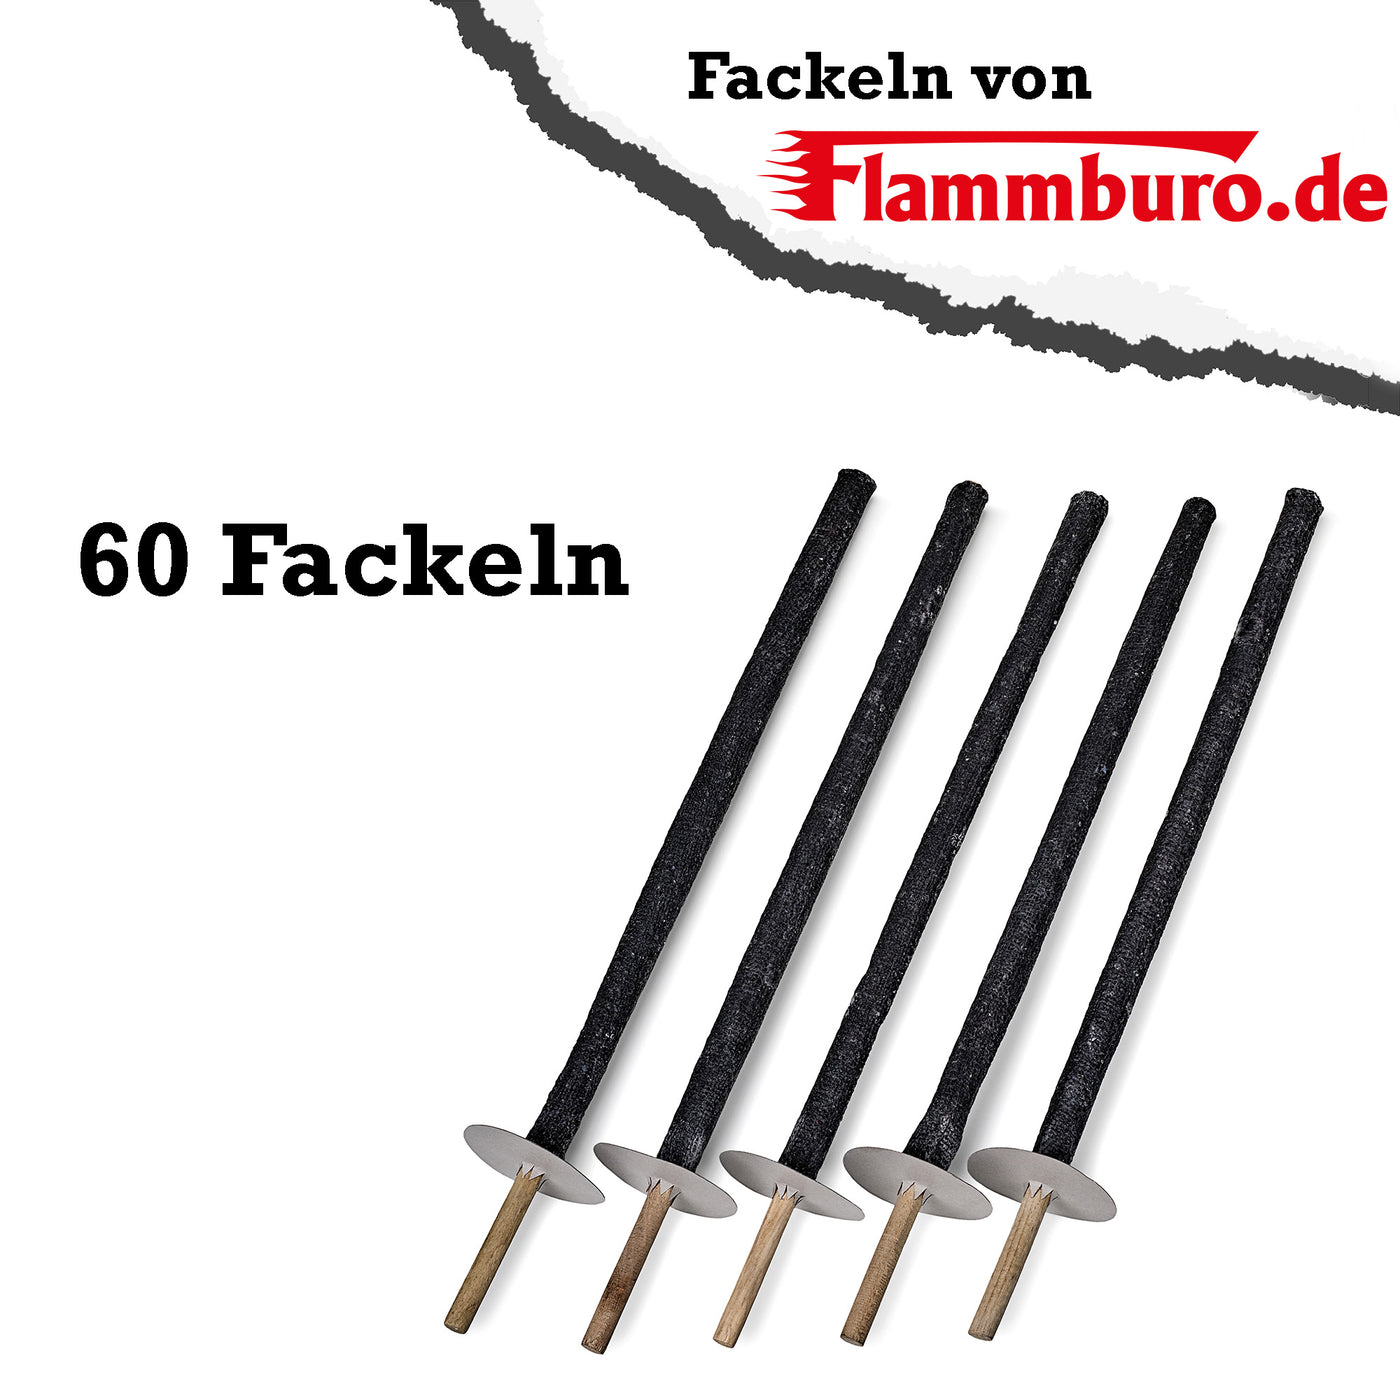 Pechfackel - 60 Fackeln